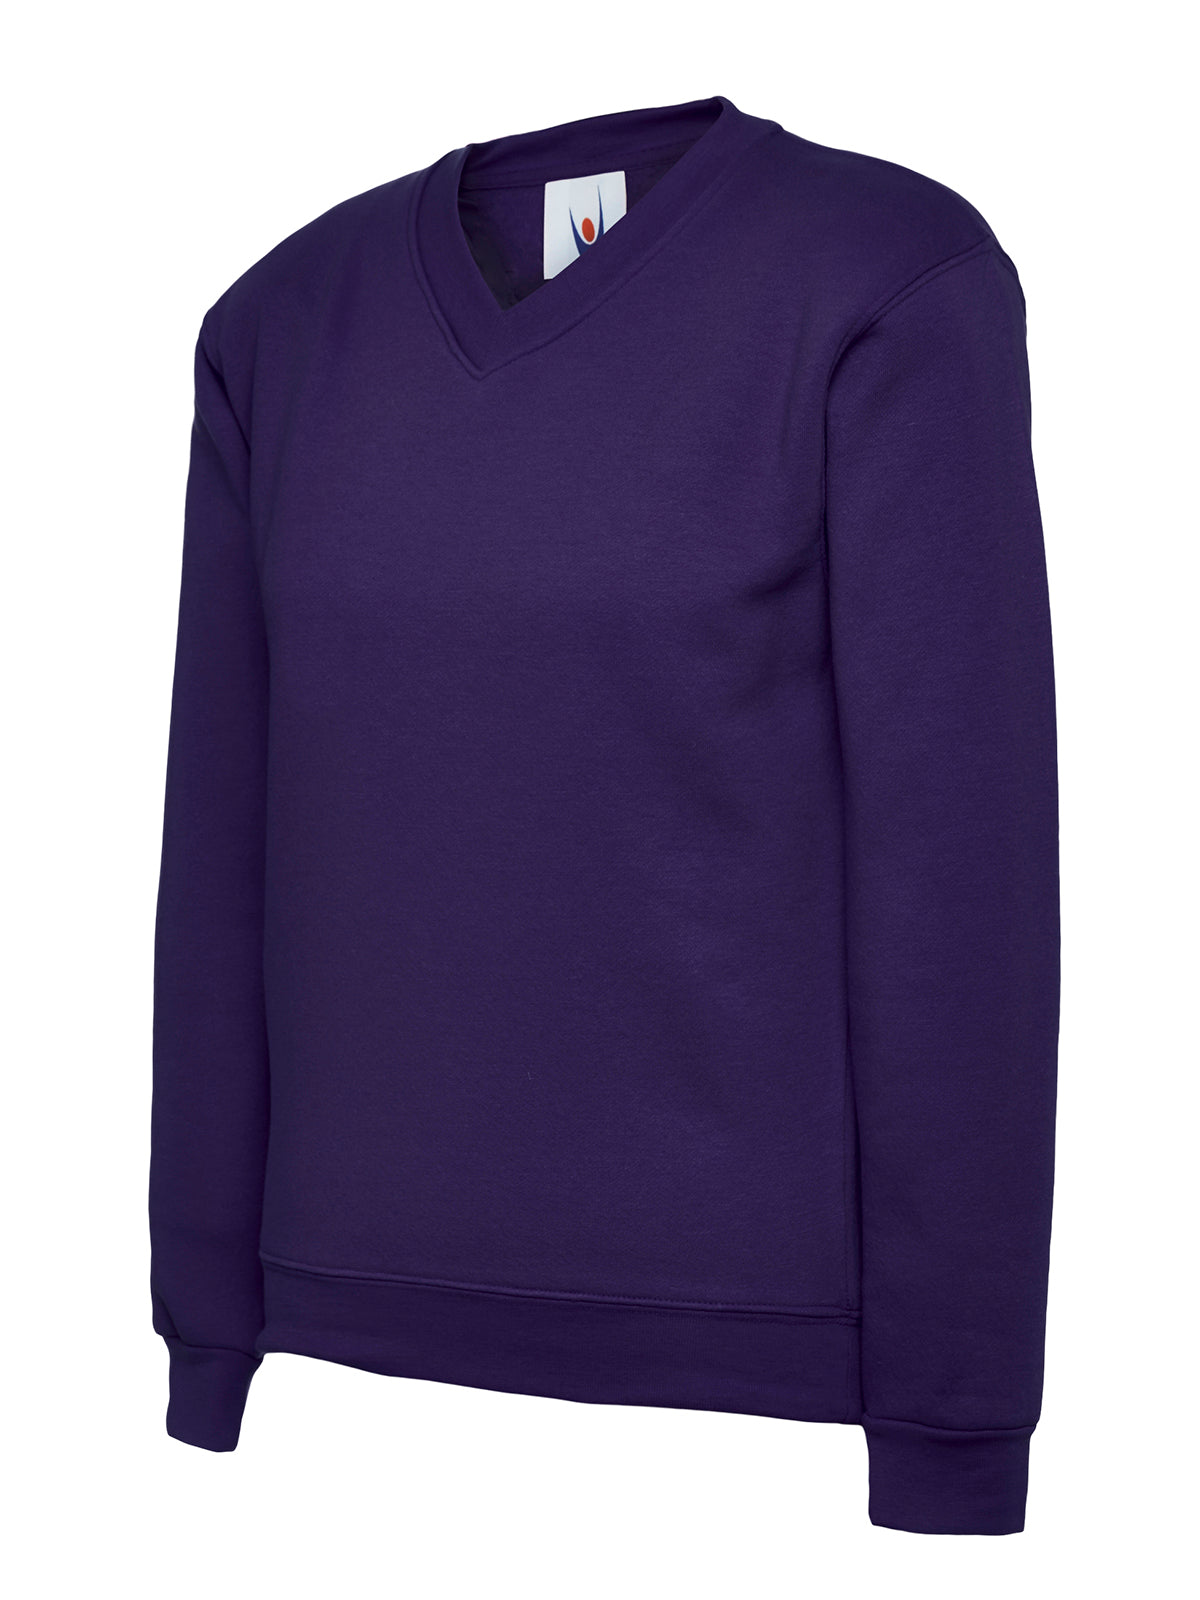 Uneek Childrens V Neck Sweatshirt UC206 - Purple